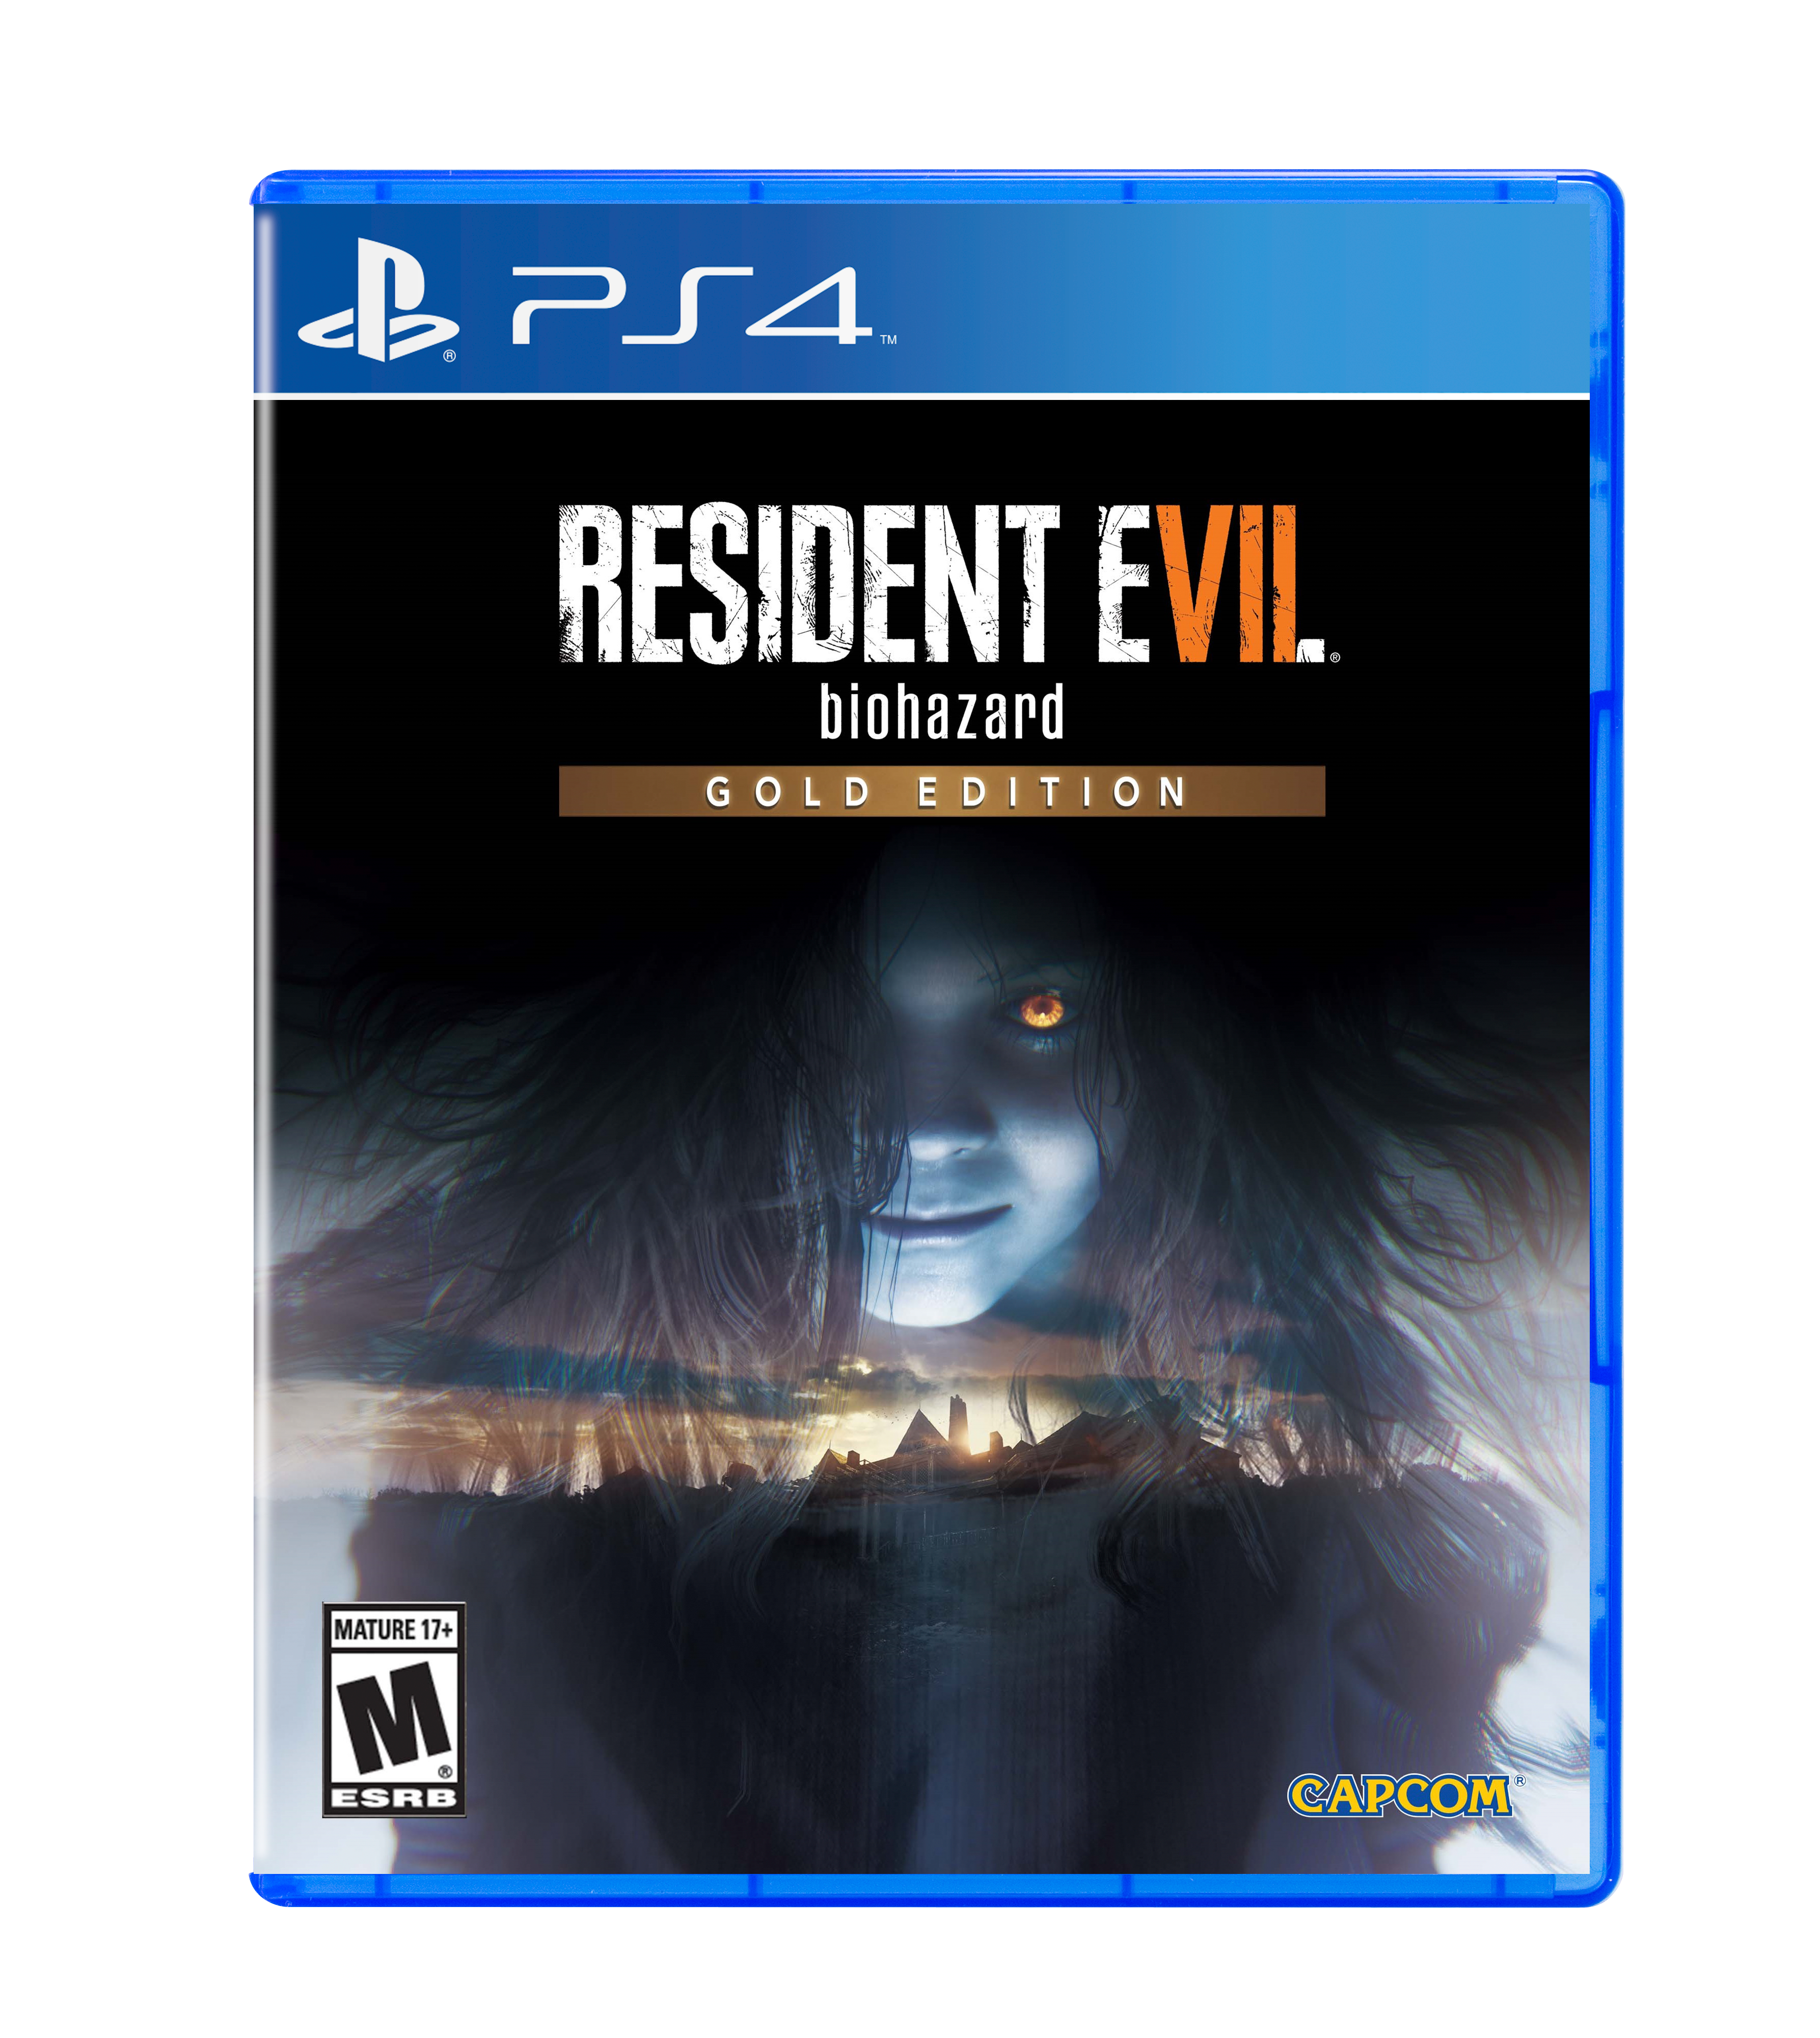 Resident Evil 7 Biohazard - PS4 PlayStation | GameStop 4 